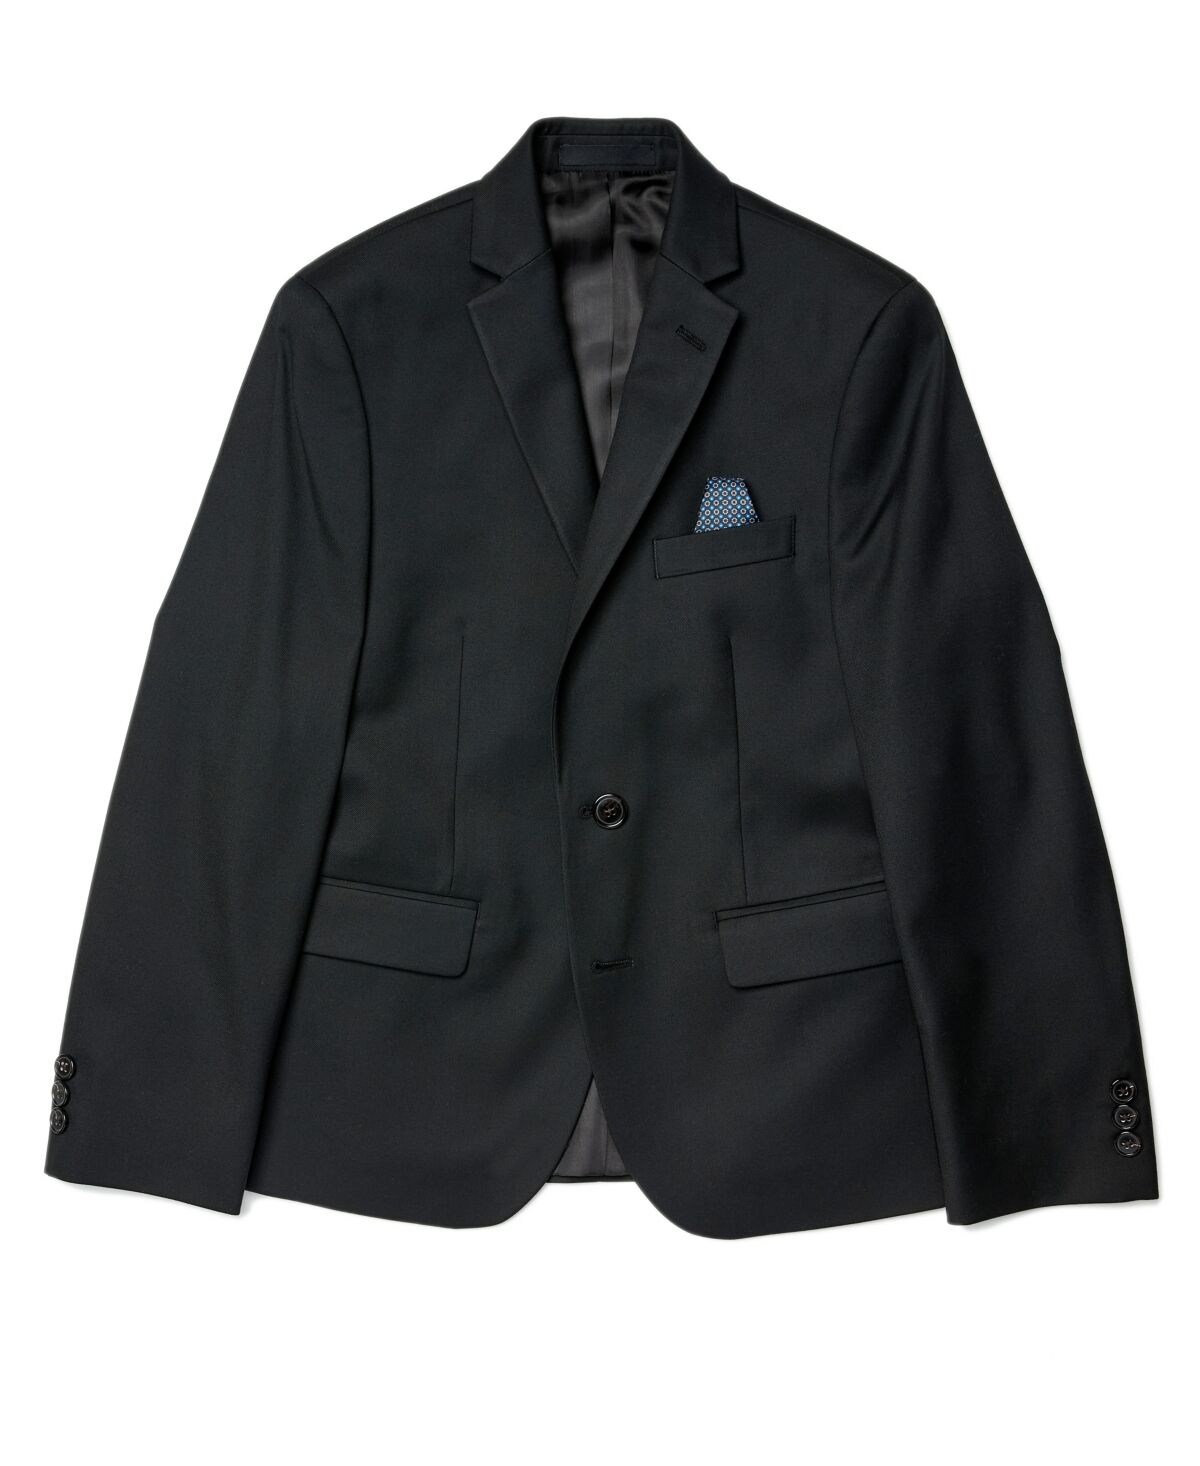 Ralph Lauren Lauren Ralph Lauren Big Boys Husky Solid Classic Sport Coats - Black